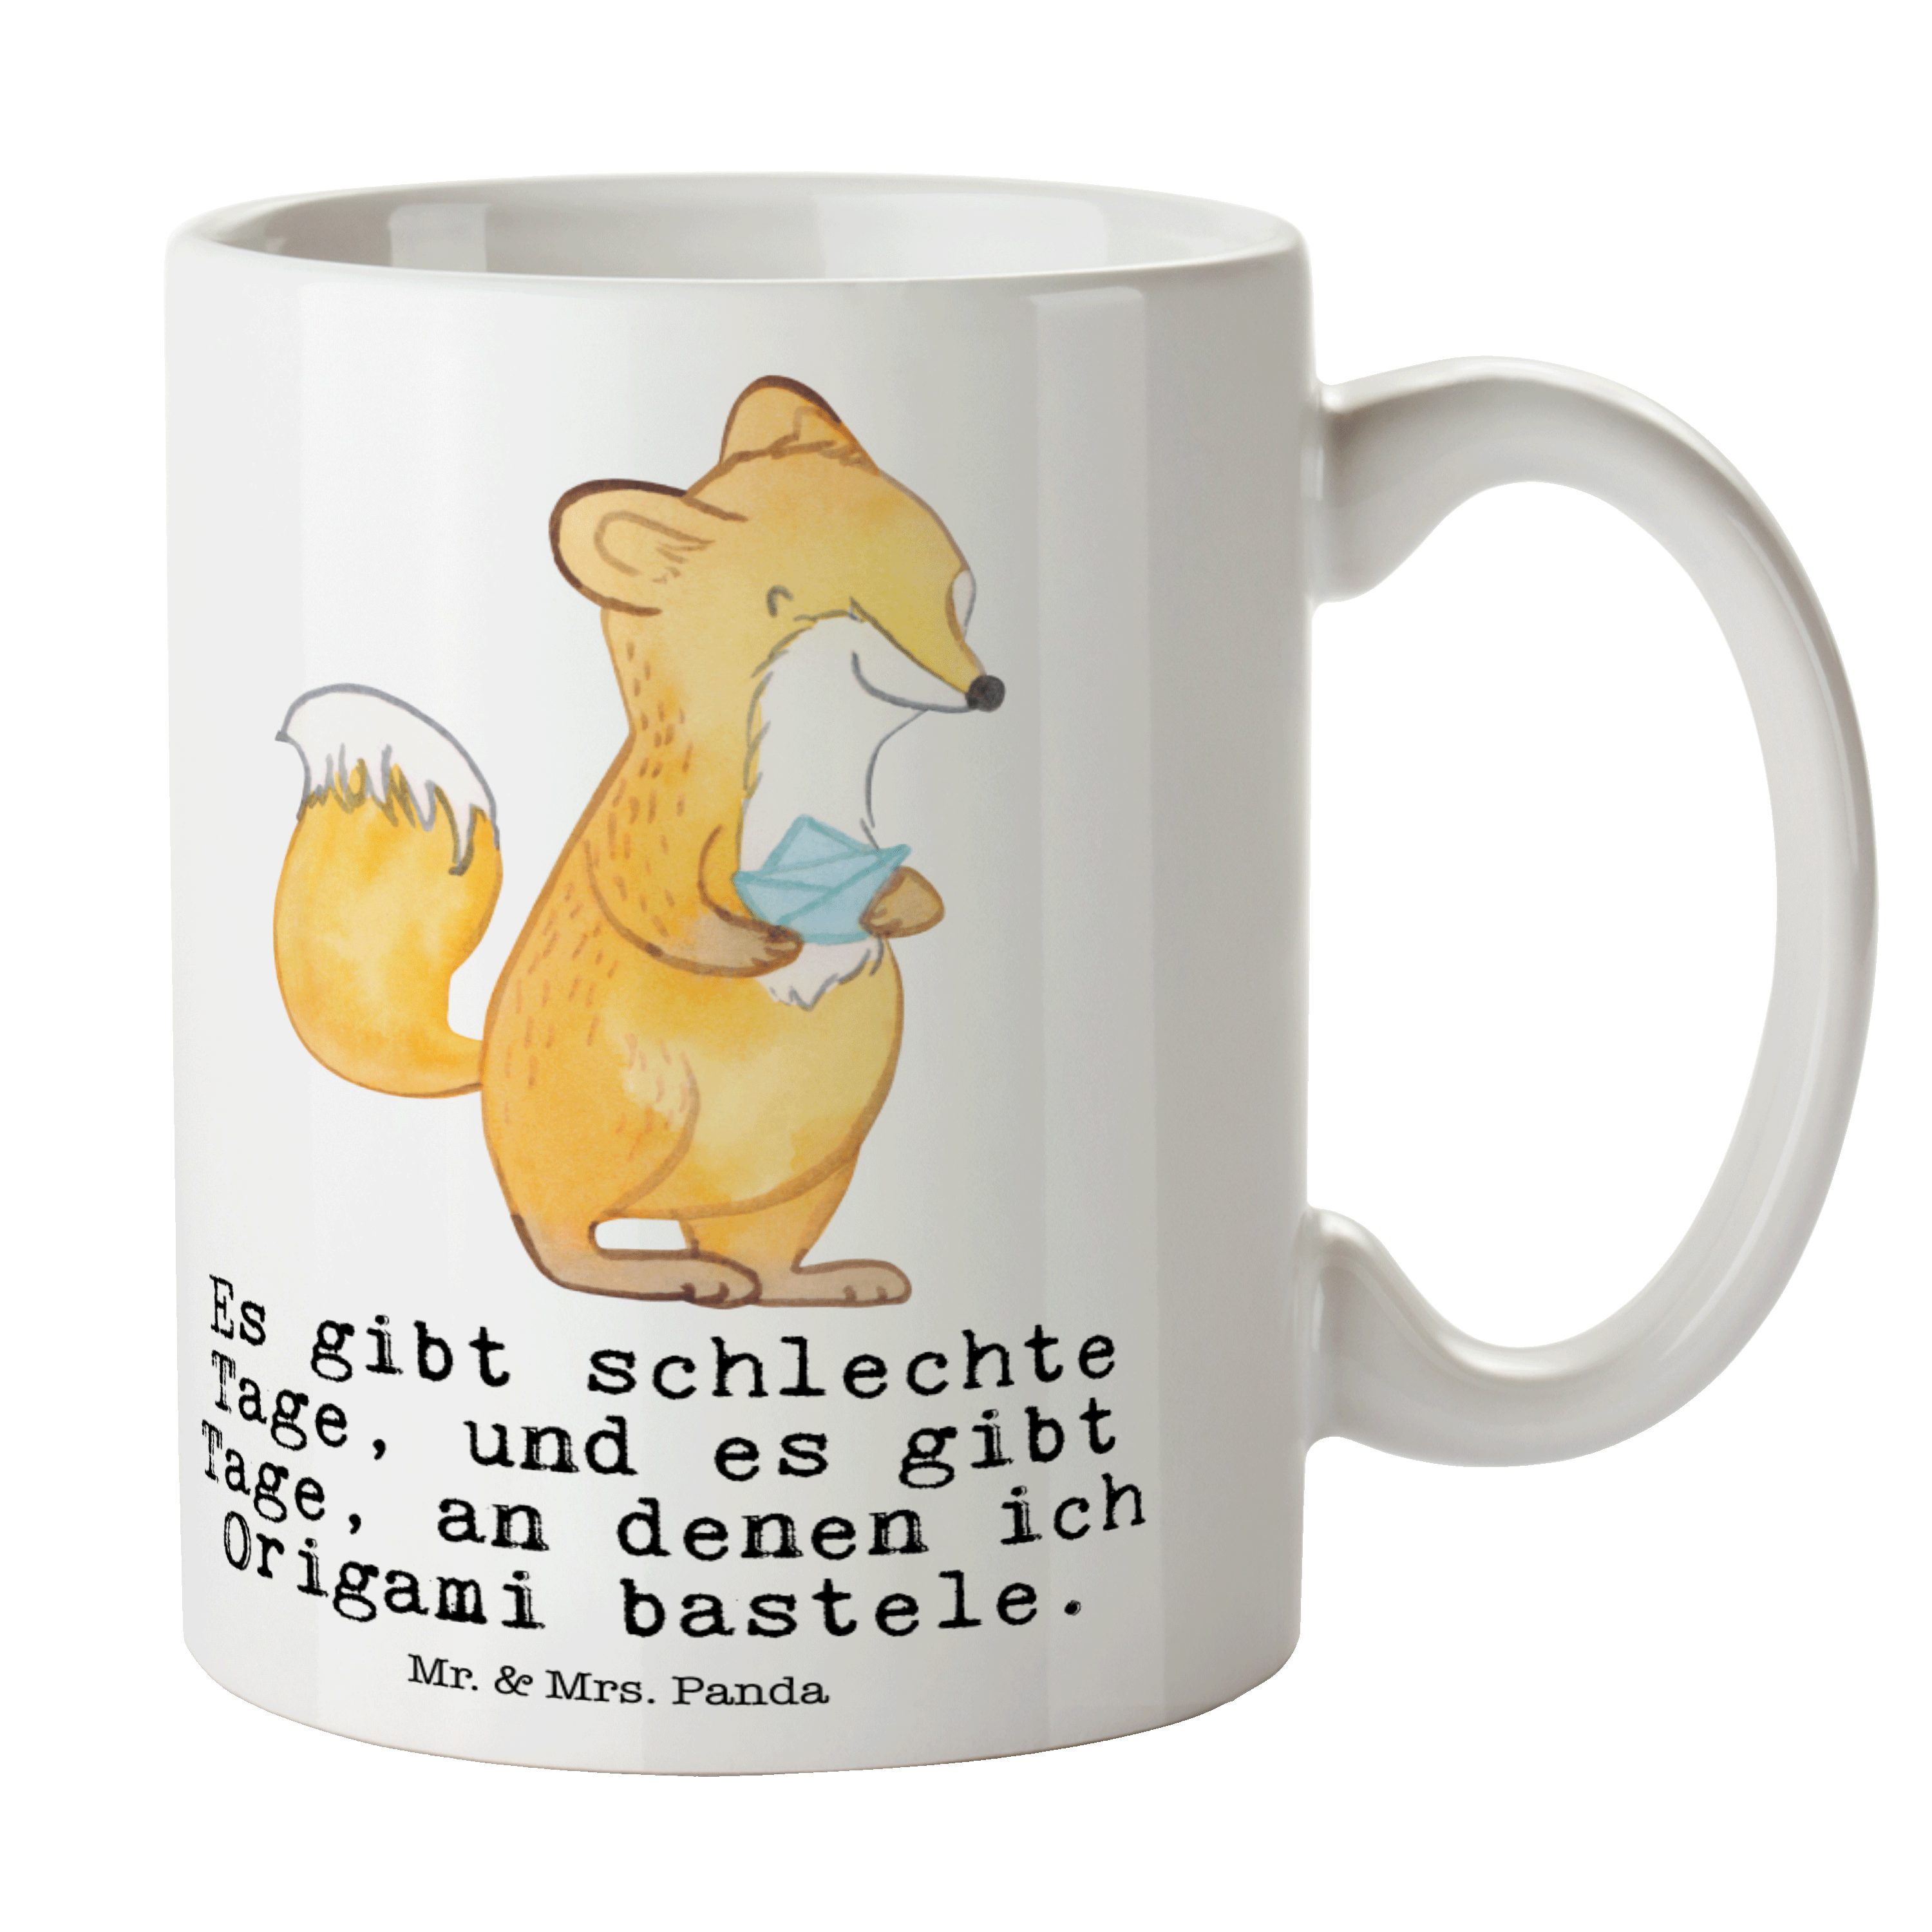 Mr. & Mrs. Panda Tasse Fuchs Origami Tage - Weiß - Geschenk, Tasse Sprüche, Danke, Tasse, Sc, Keramik